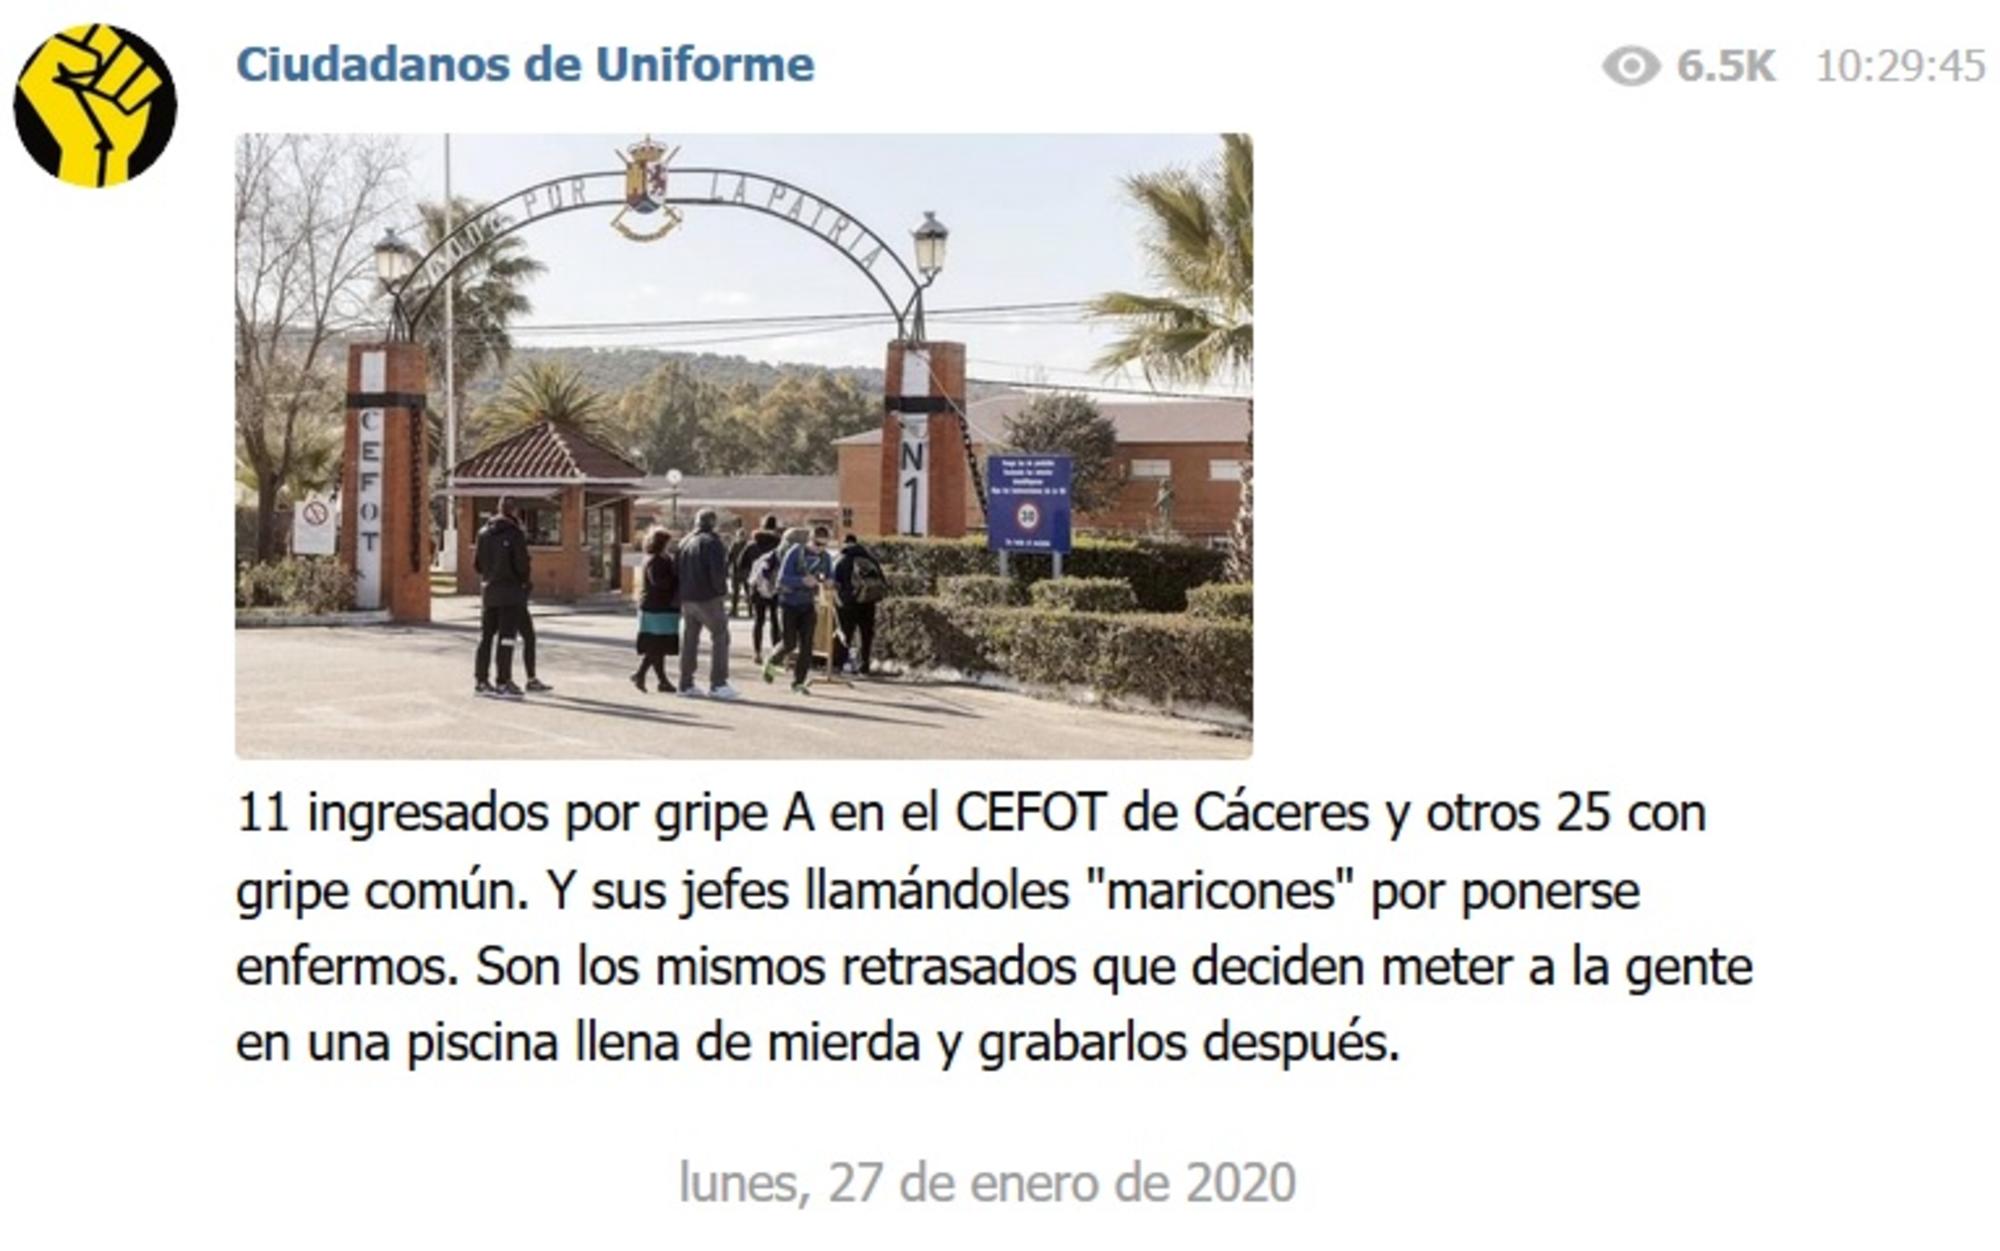 Ciudadanos de Uniforme, Cáceres